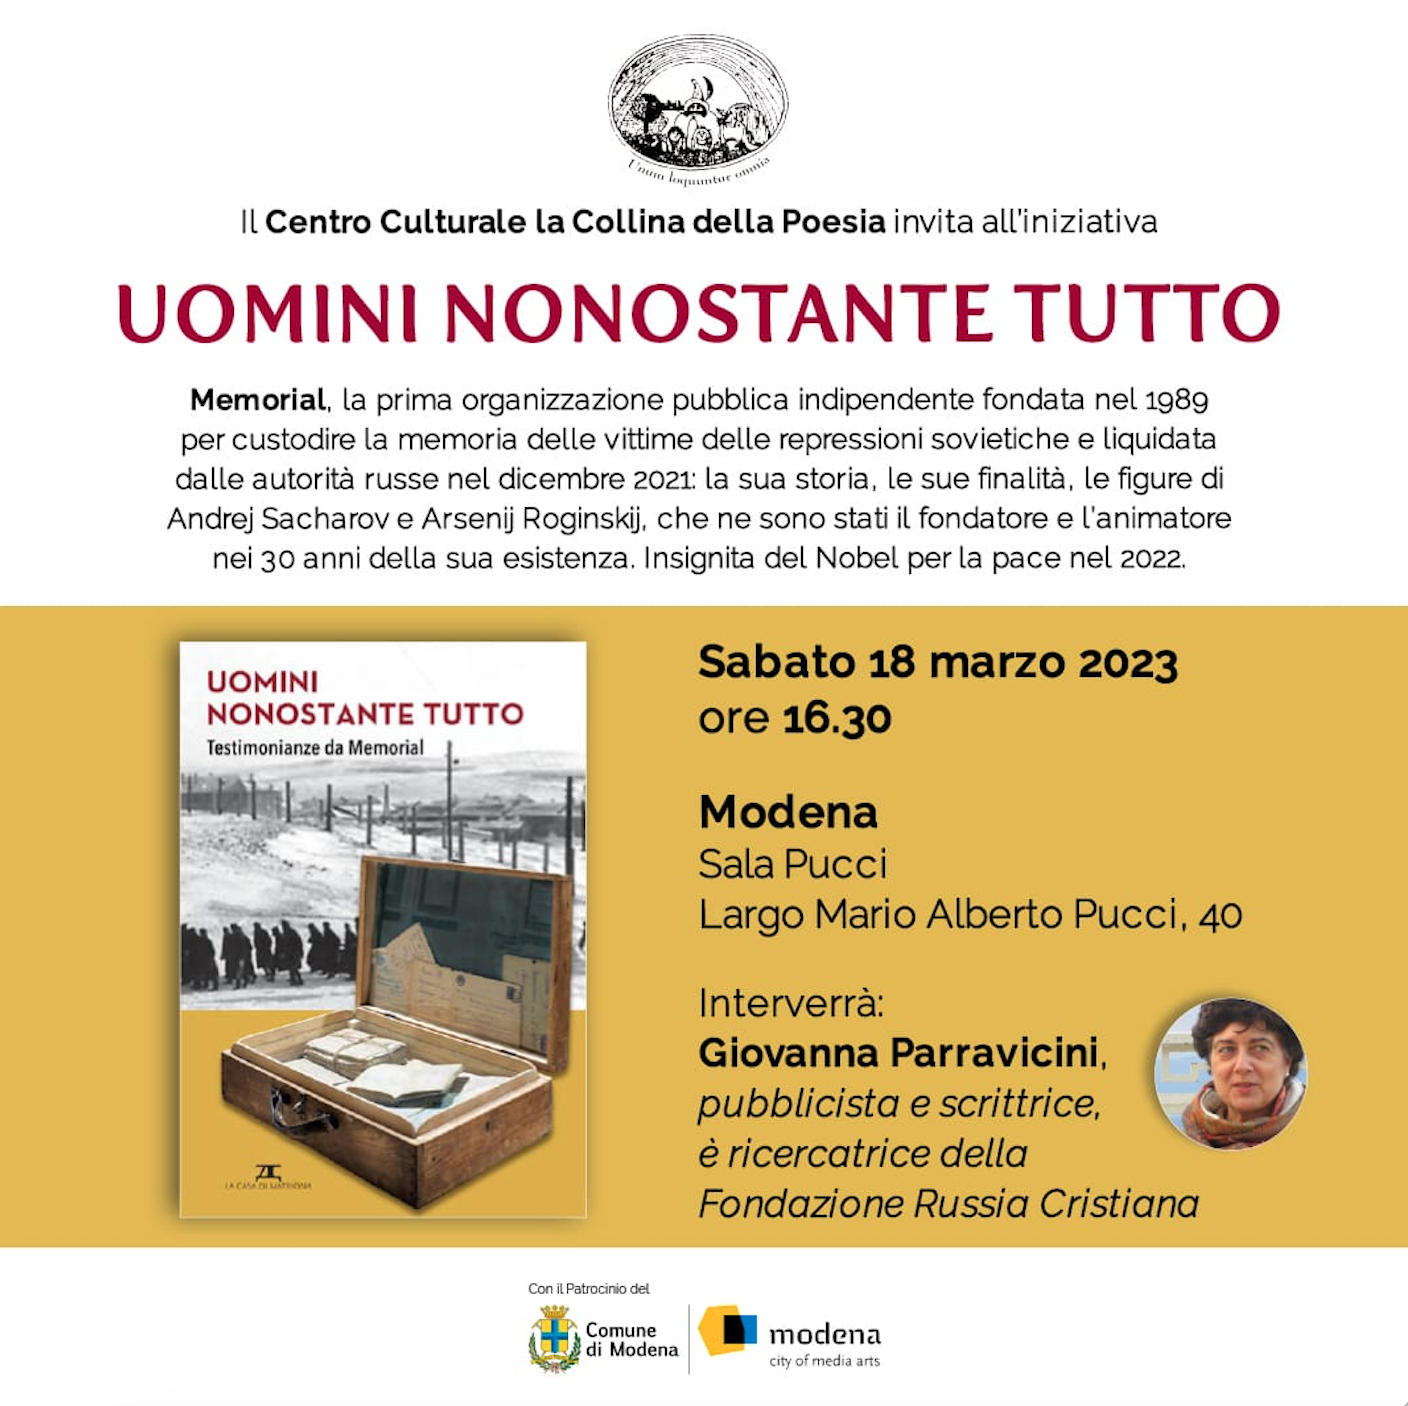 Featured image for “Modena: Uomini nonostante tutto”